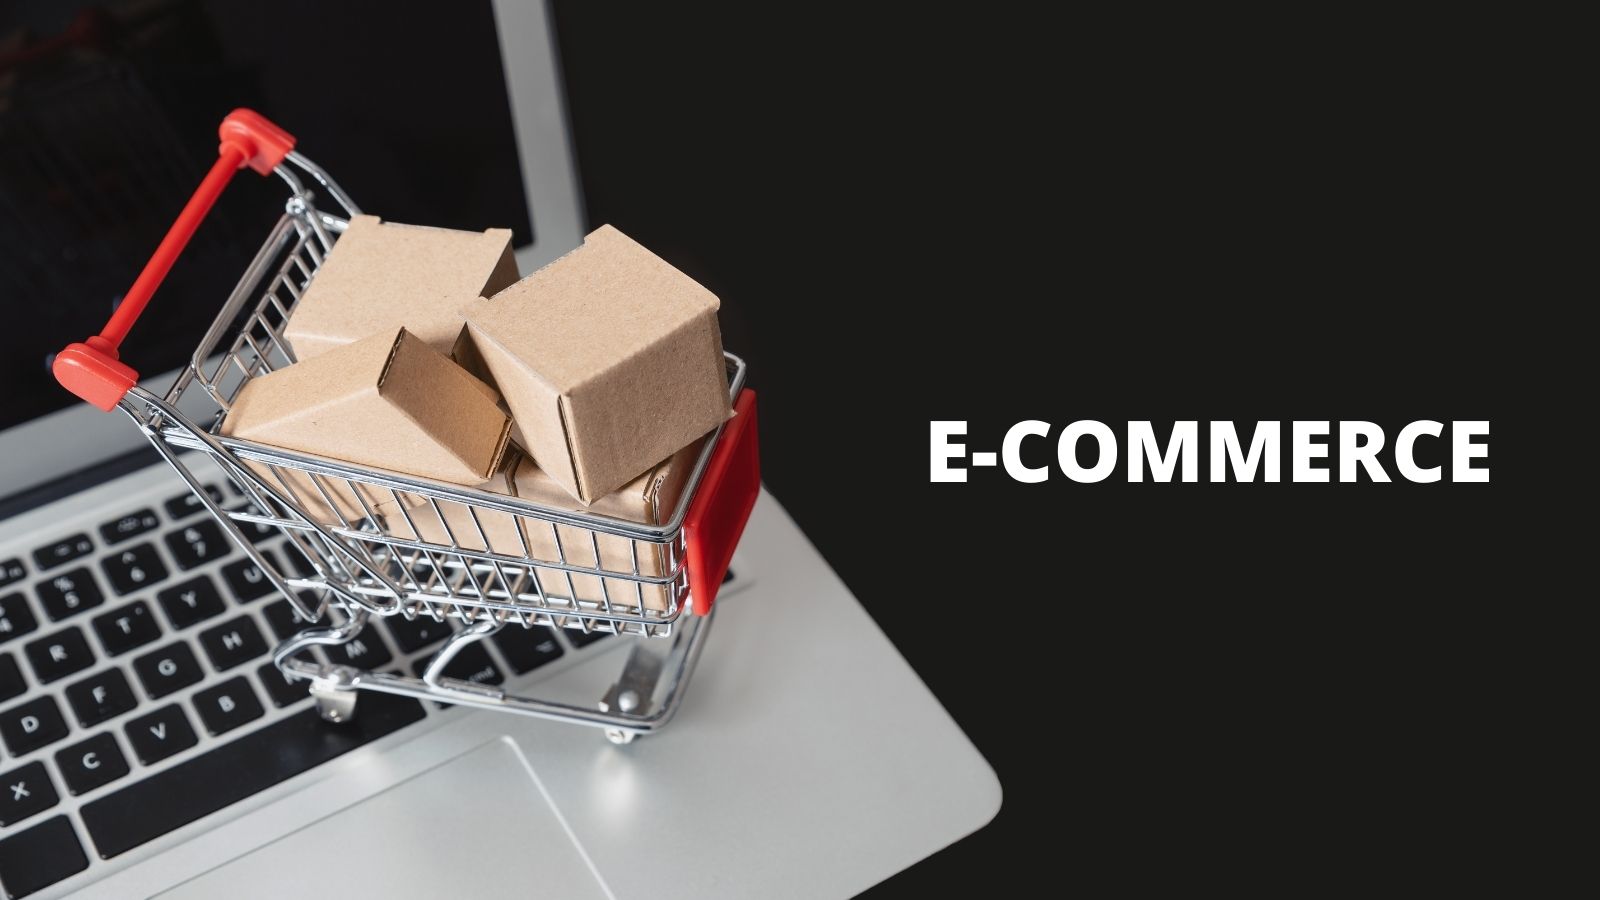 E-COMMERCE najważniejszym wyzwaniem w najbliższych latach E-commerce mediarun e commerce obraz